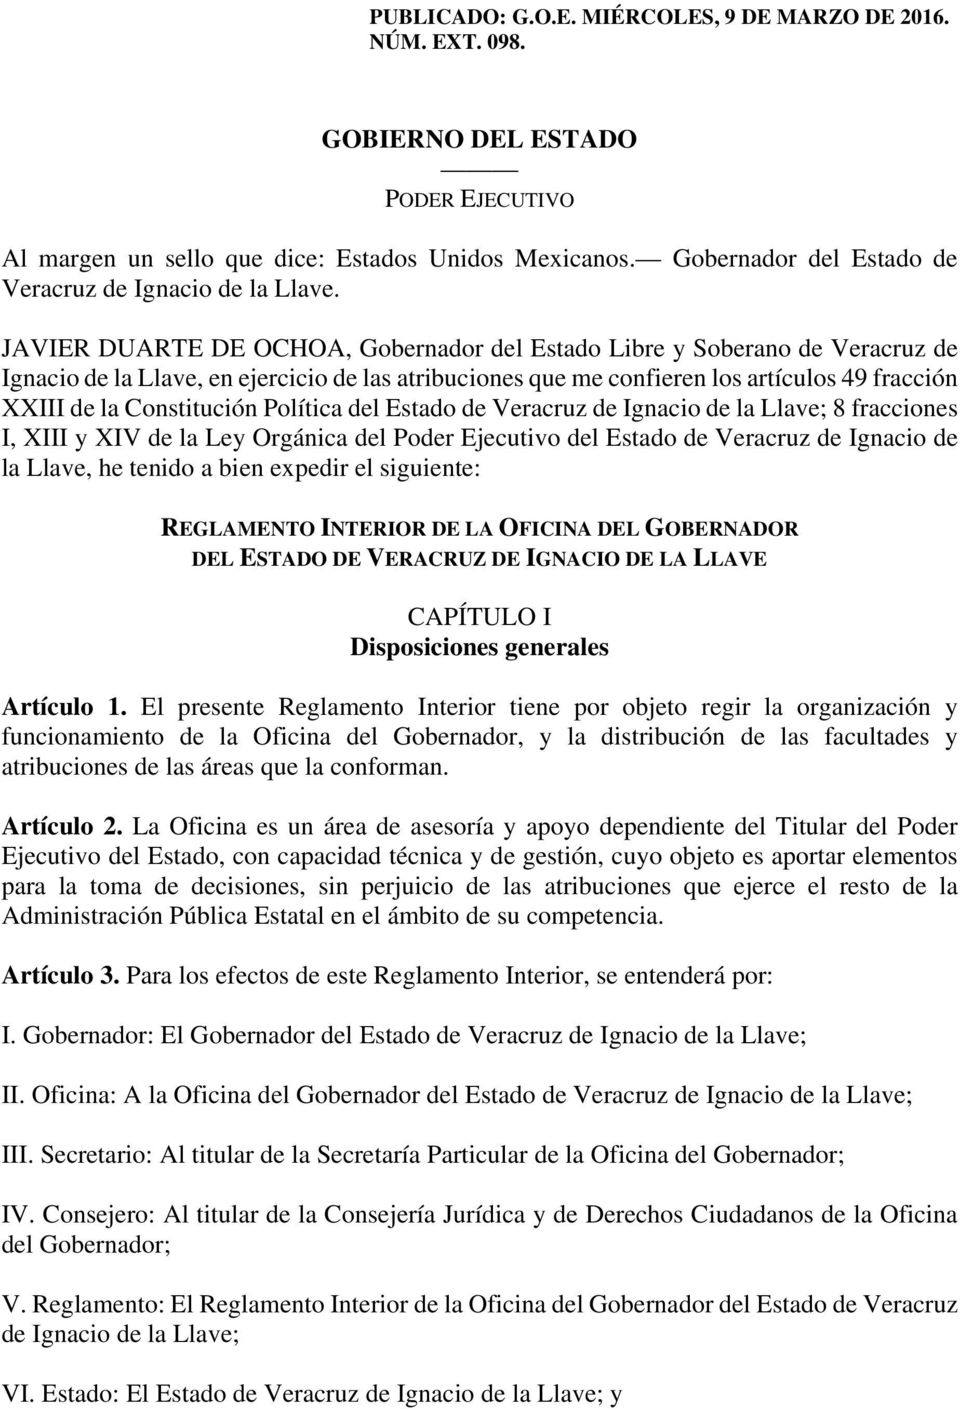 JAVIER DUARTE DE OCHOA, Gobernador del Estado Libre y Soberano de Veracruz de Ignacio de la Llave, en ejercicio de las atribuciones que me confieren los artículos 49 fracción XXIII de la Constitución